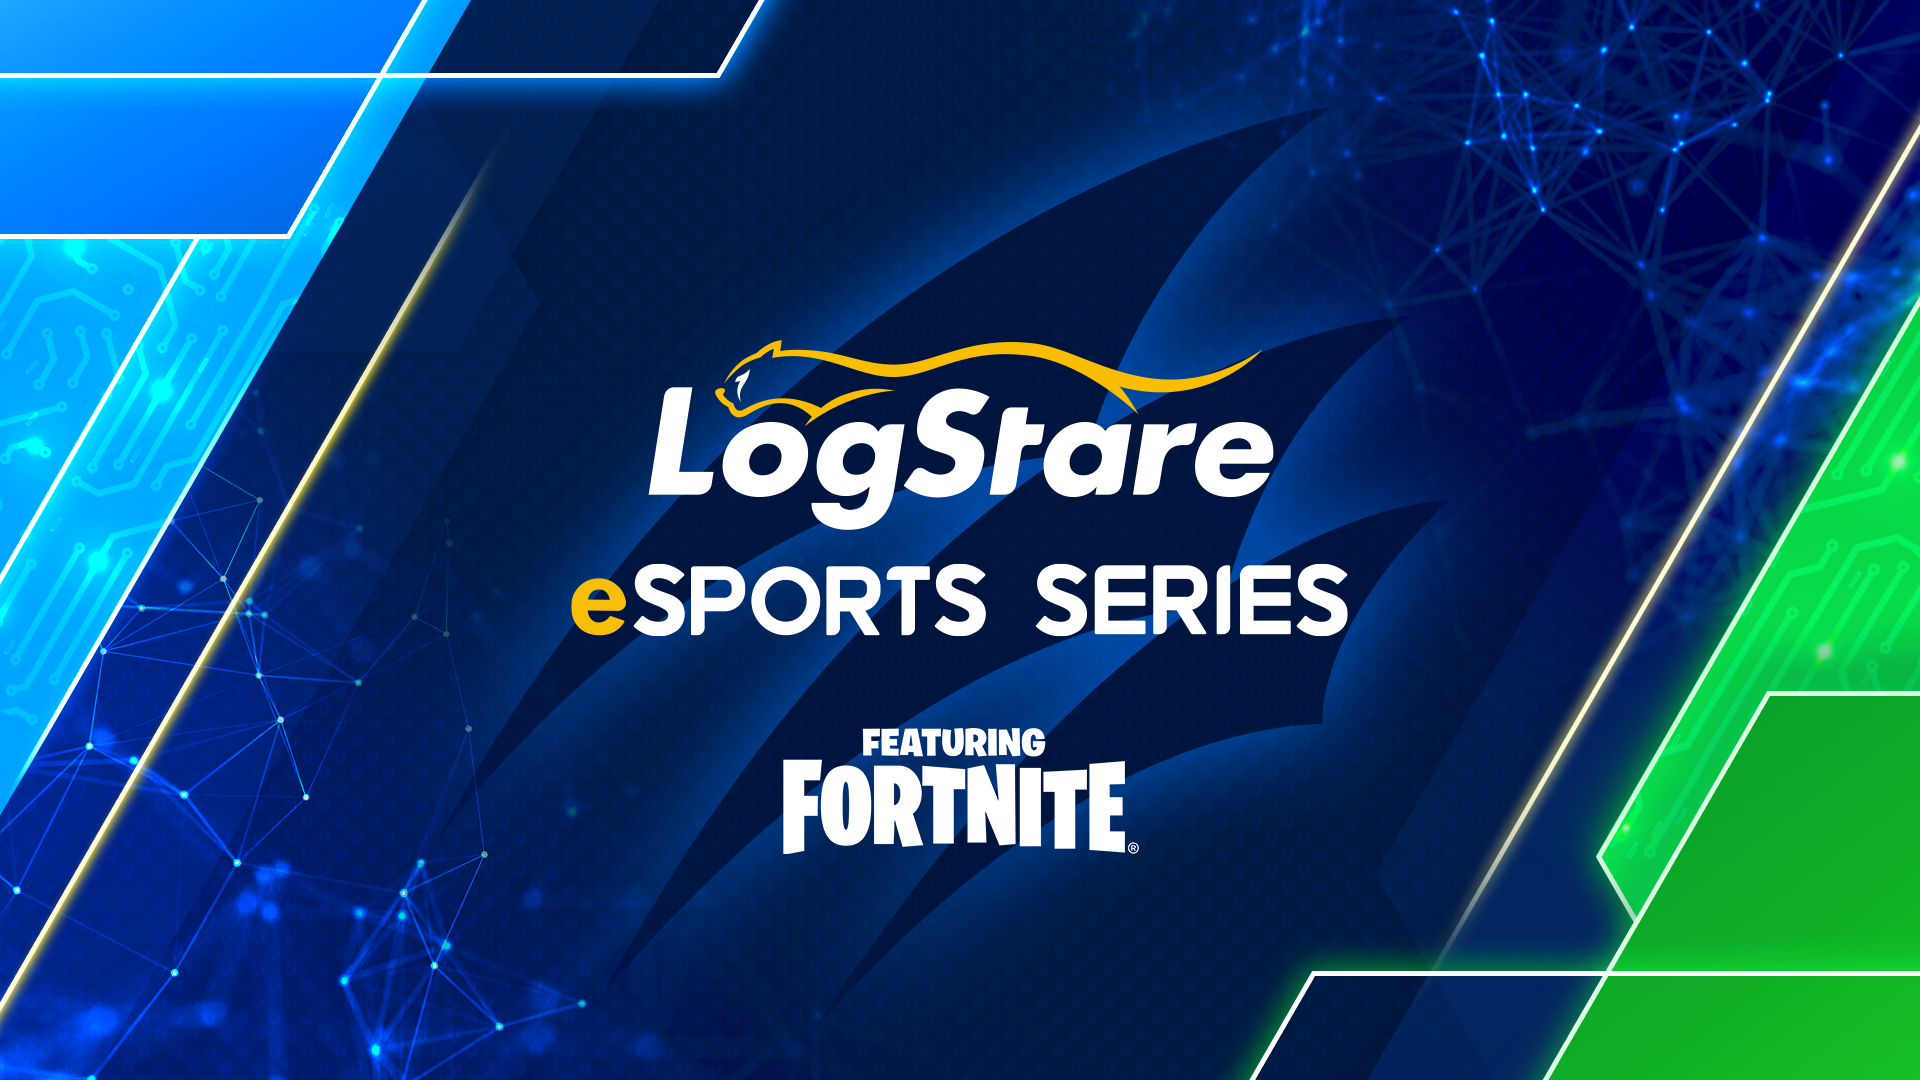 【大会情報】LogStare eSports Series featuring FORTNITE【2022年4月29日】